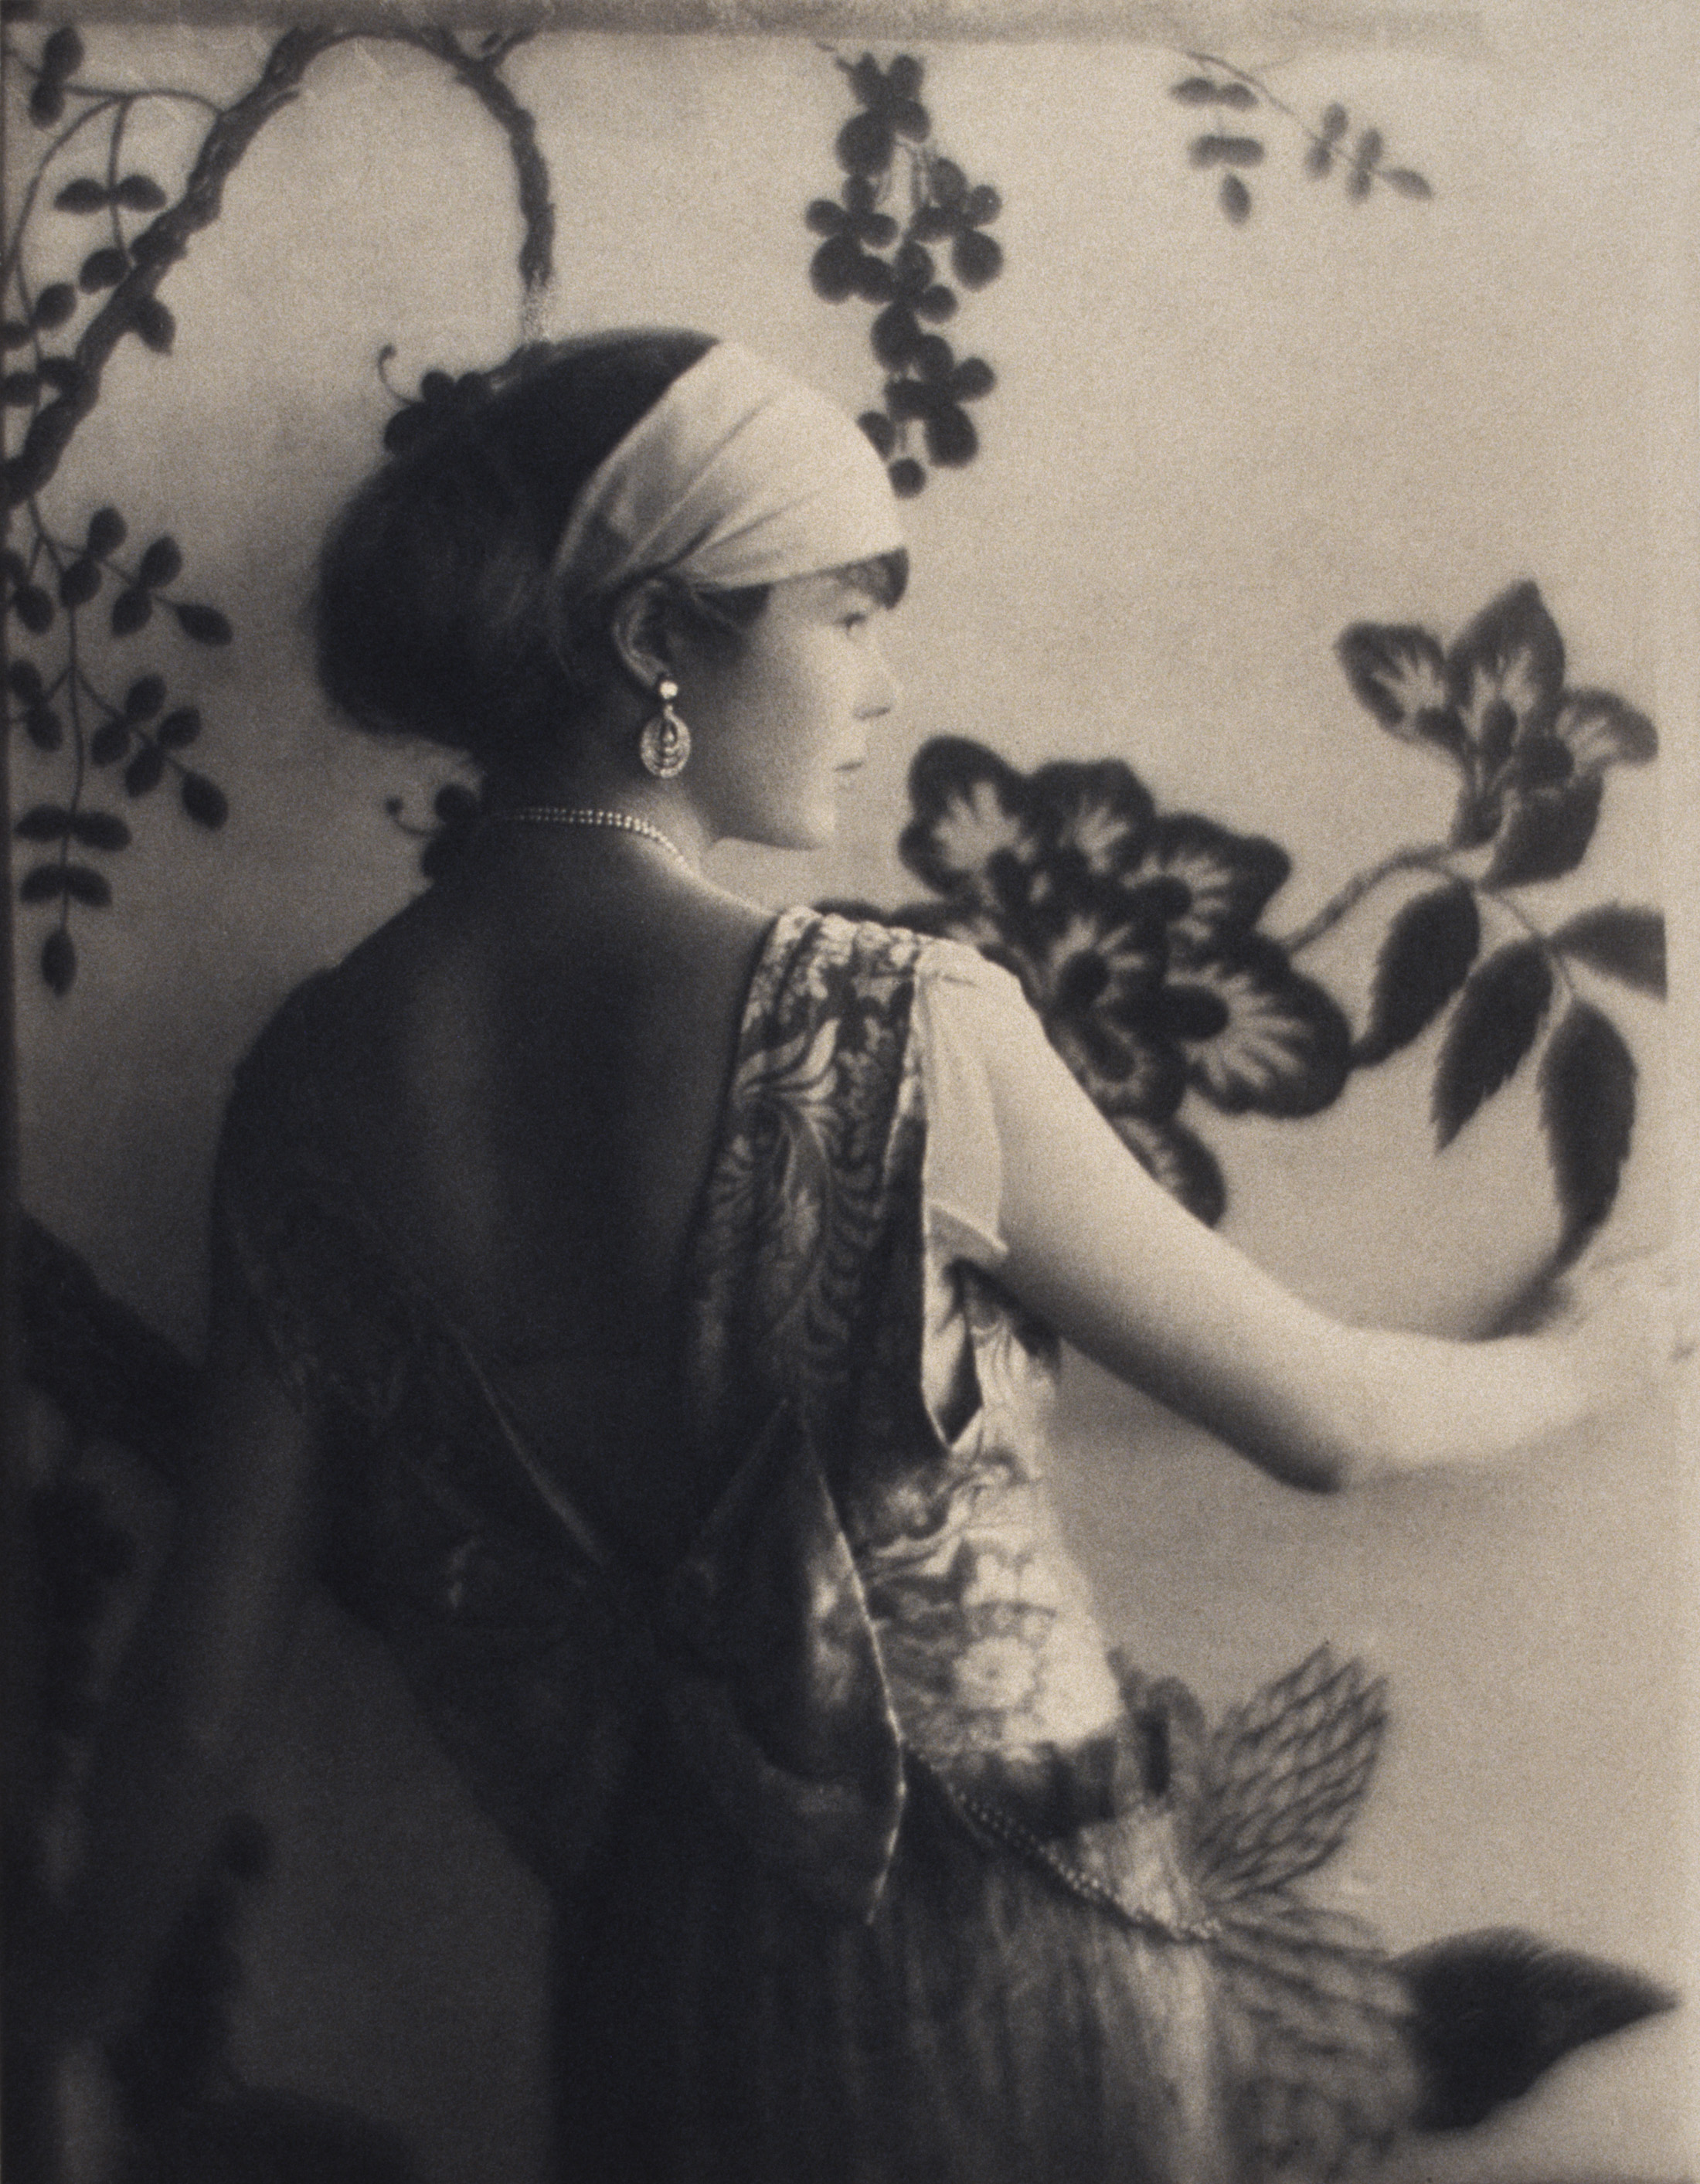 Baron de Meyer, Portrait of a woman, 1920-1930